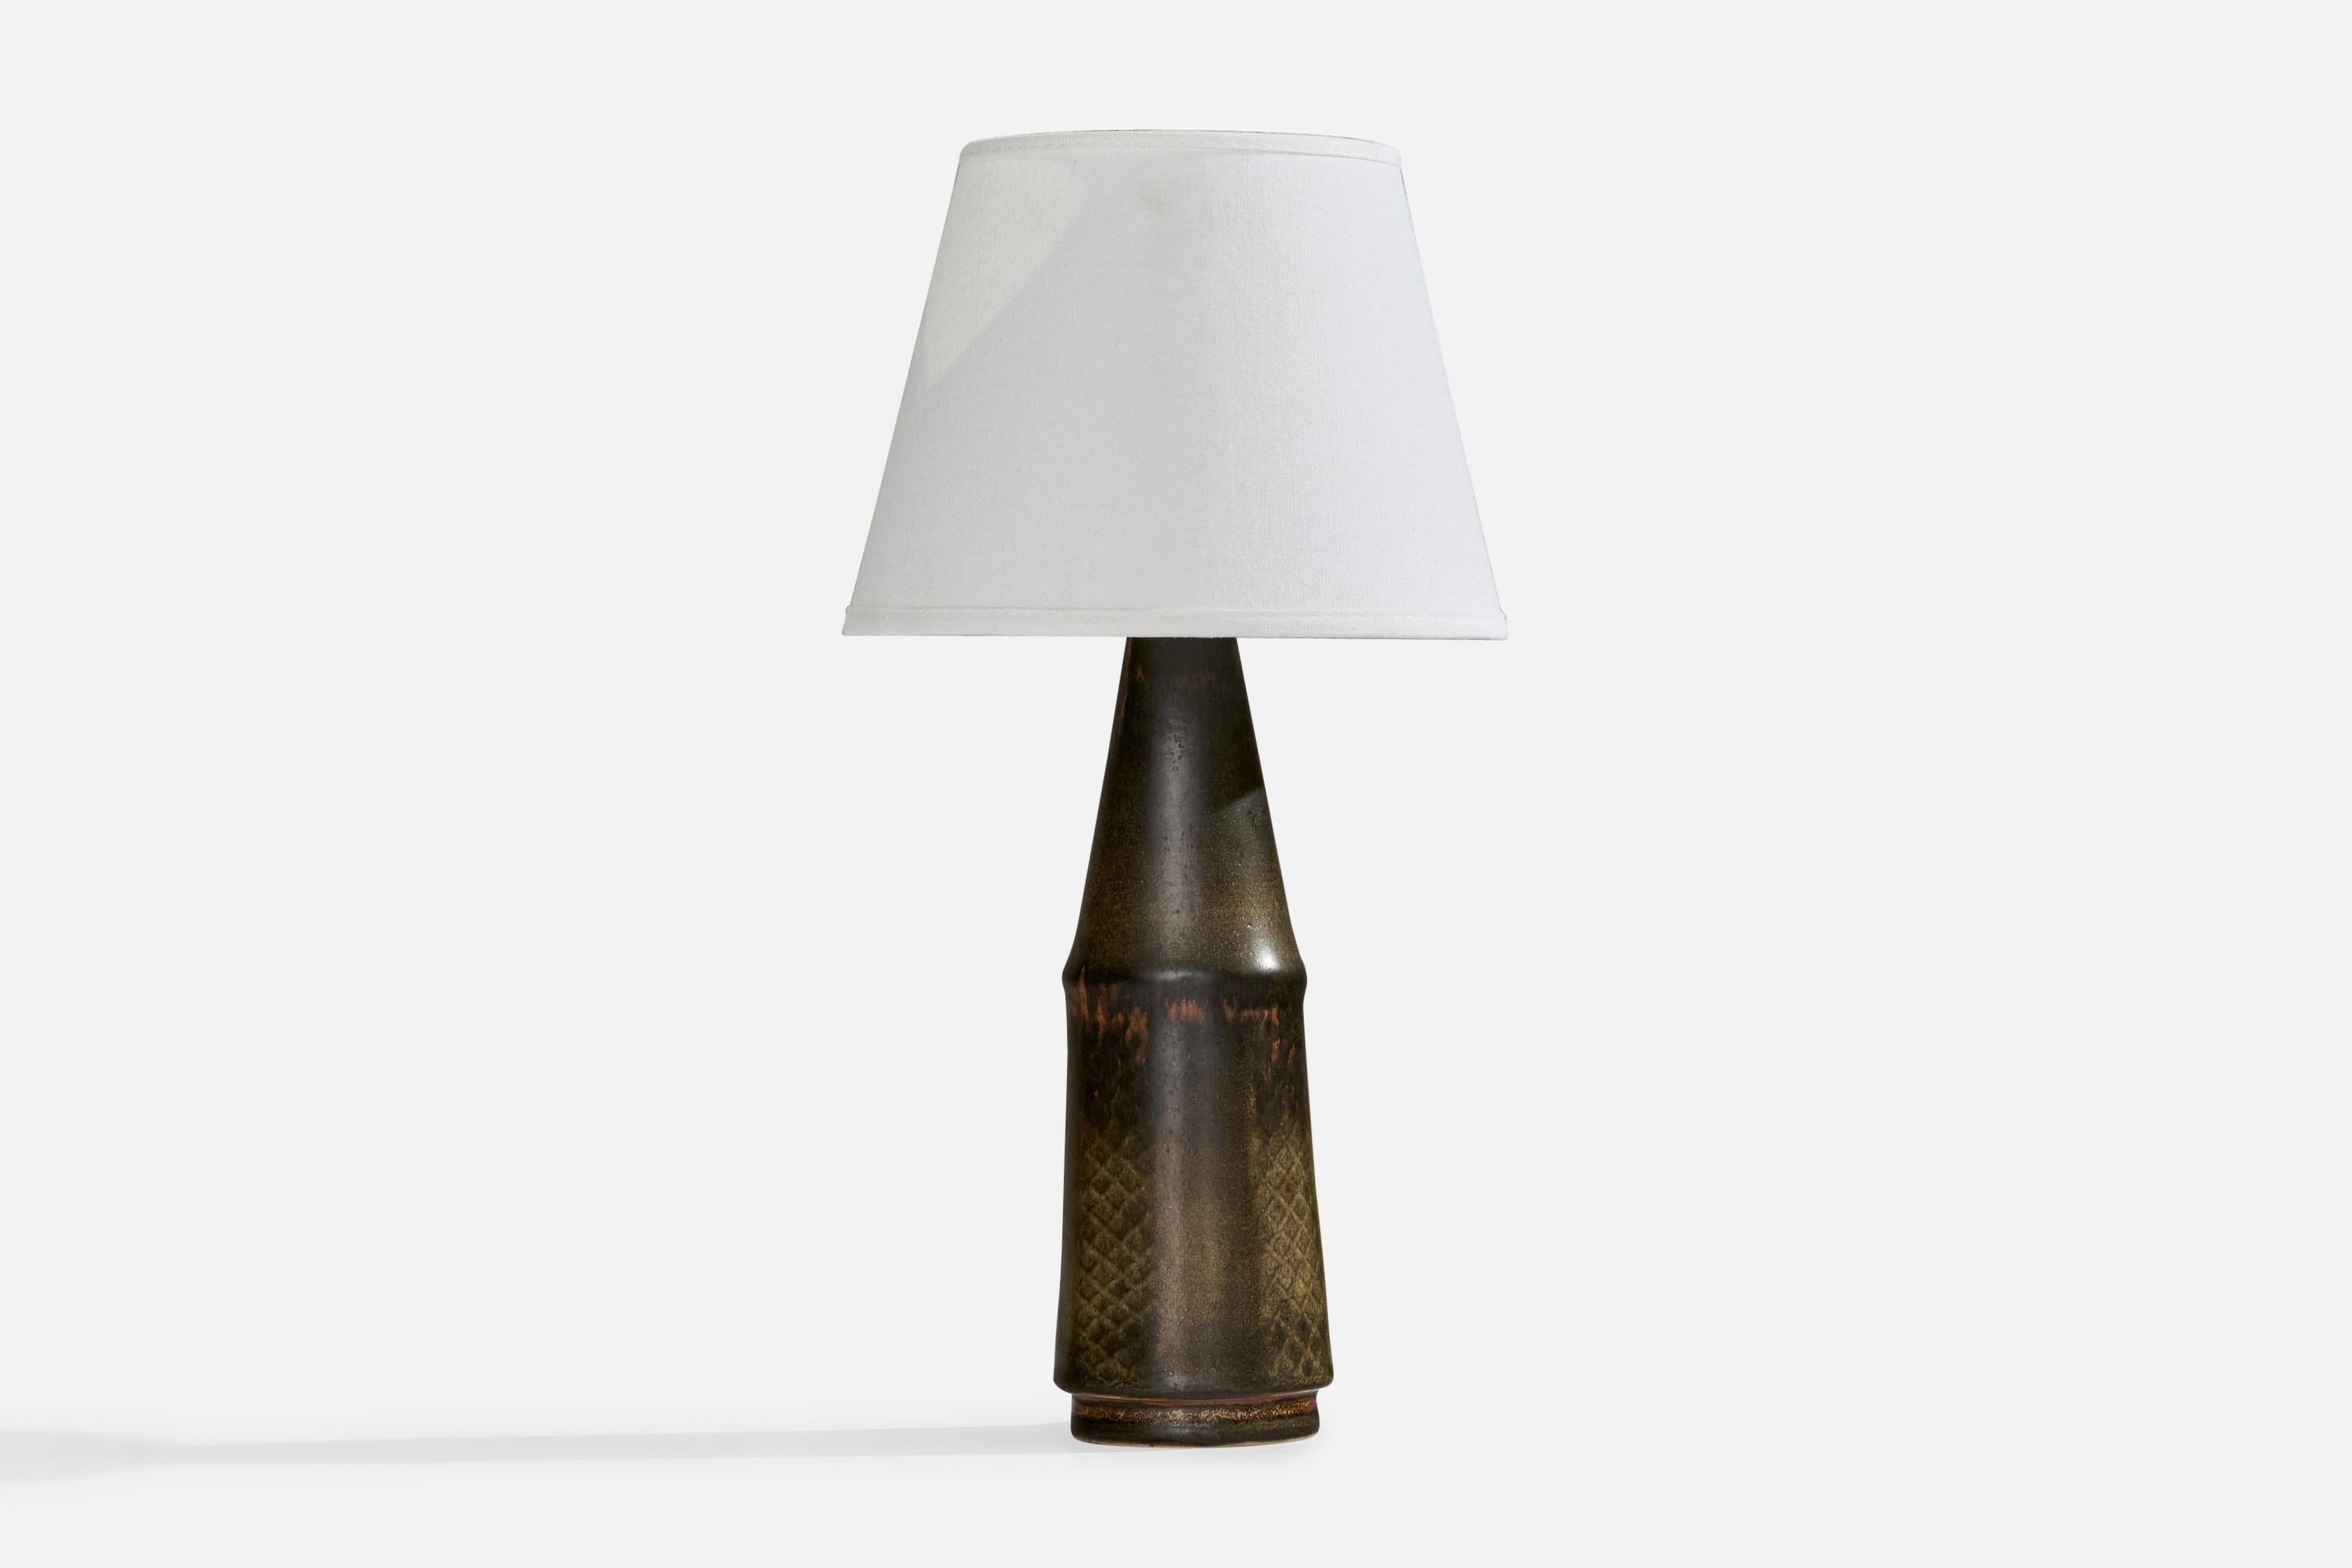 Lampe de table unique en son genre, incisée et émaillée en gris, conçue par Carl-Harry Stålhane et produite par Rörstrand, Suède, années 1950.

Dimensions de la lampe (pouces) : 13